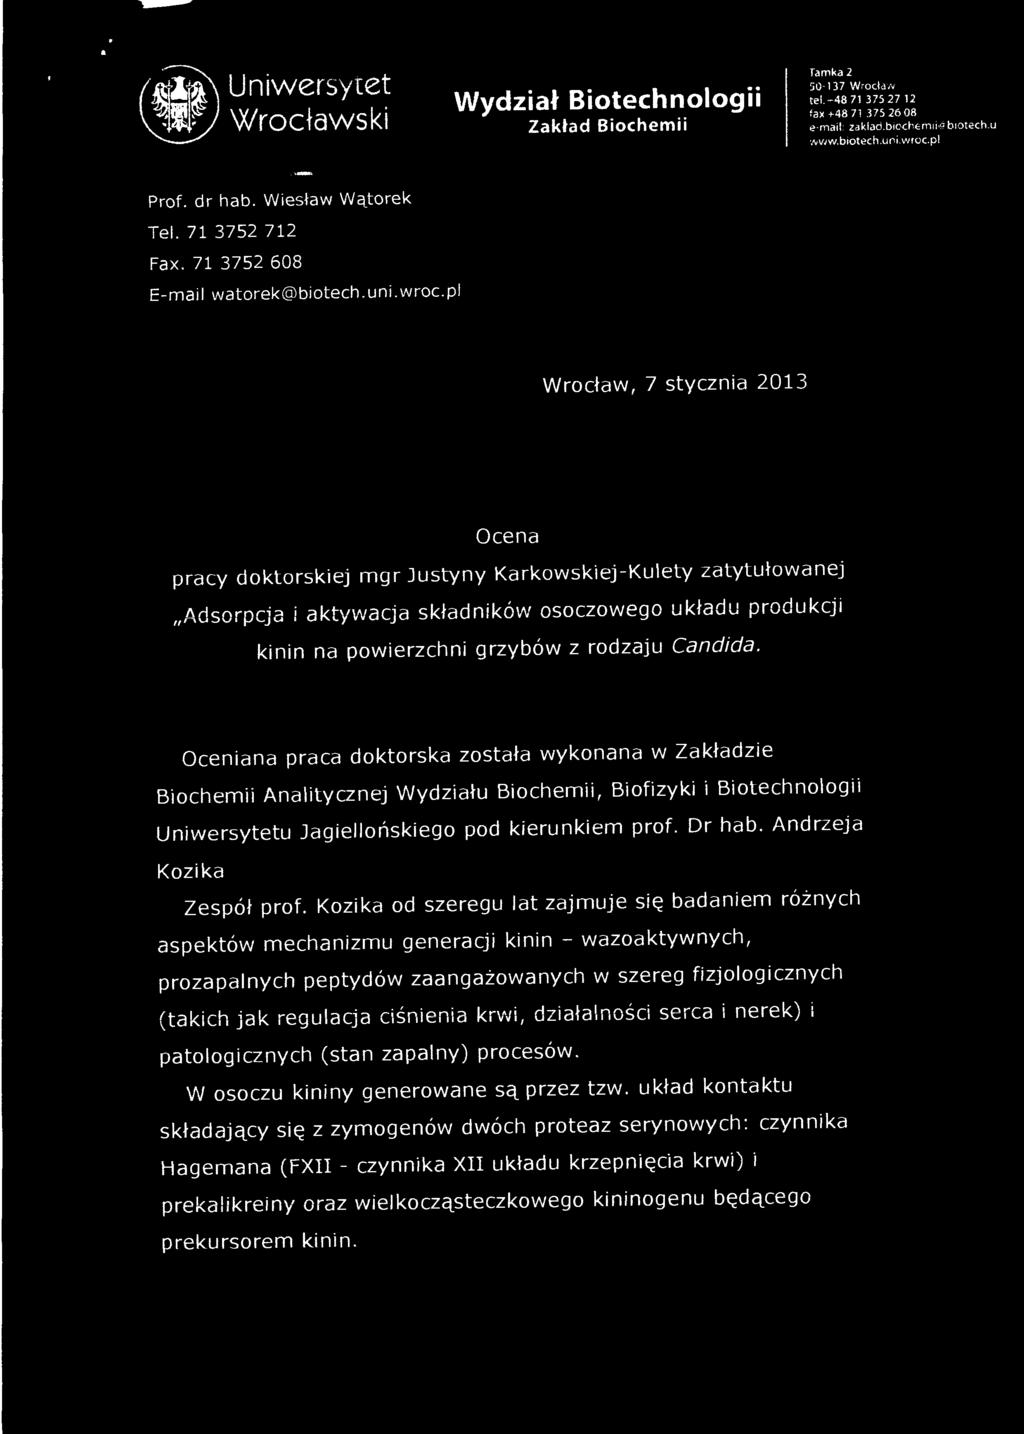 pl Wrocław, 7 stycznia 2013 Ocena pracy doktorskiej mgr Justyny Karkowskiej-Kulety zatytułowanej Adsorpcja i aktywacja składników osoczowego układu produkcji kinin na powierzchni grzybów z rodzaju